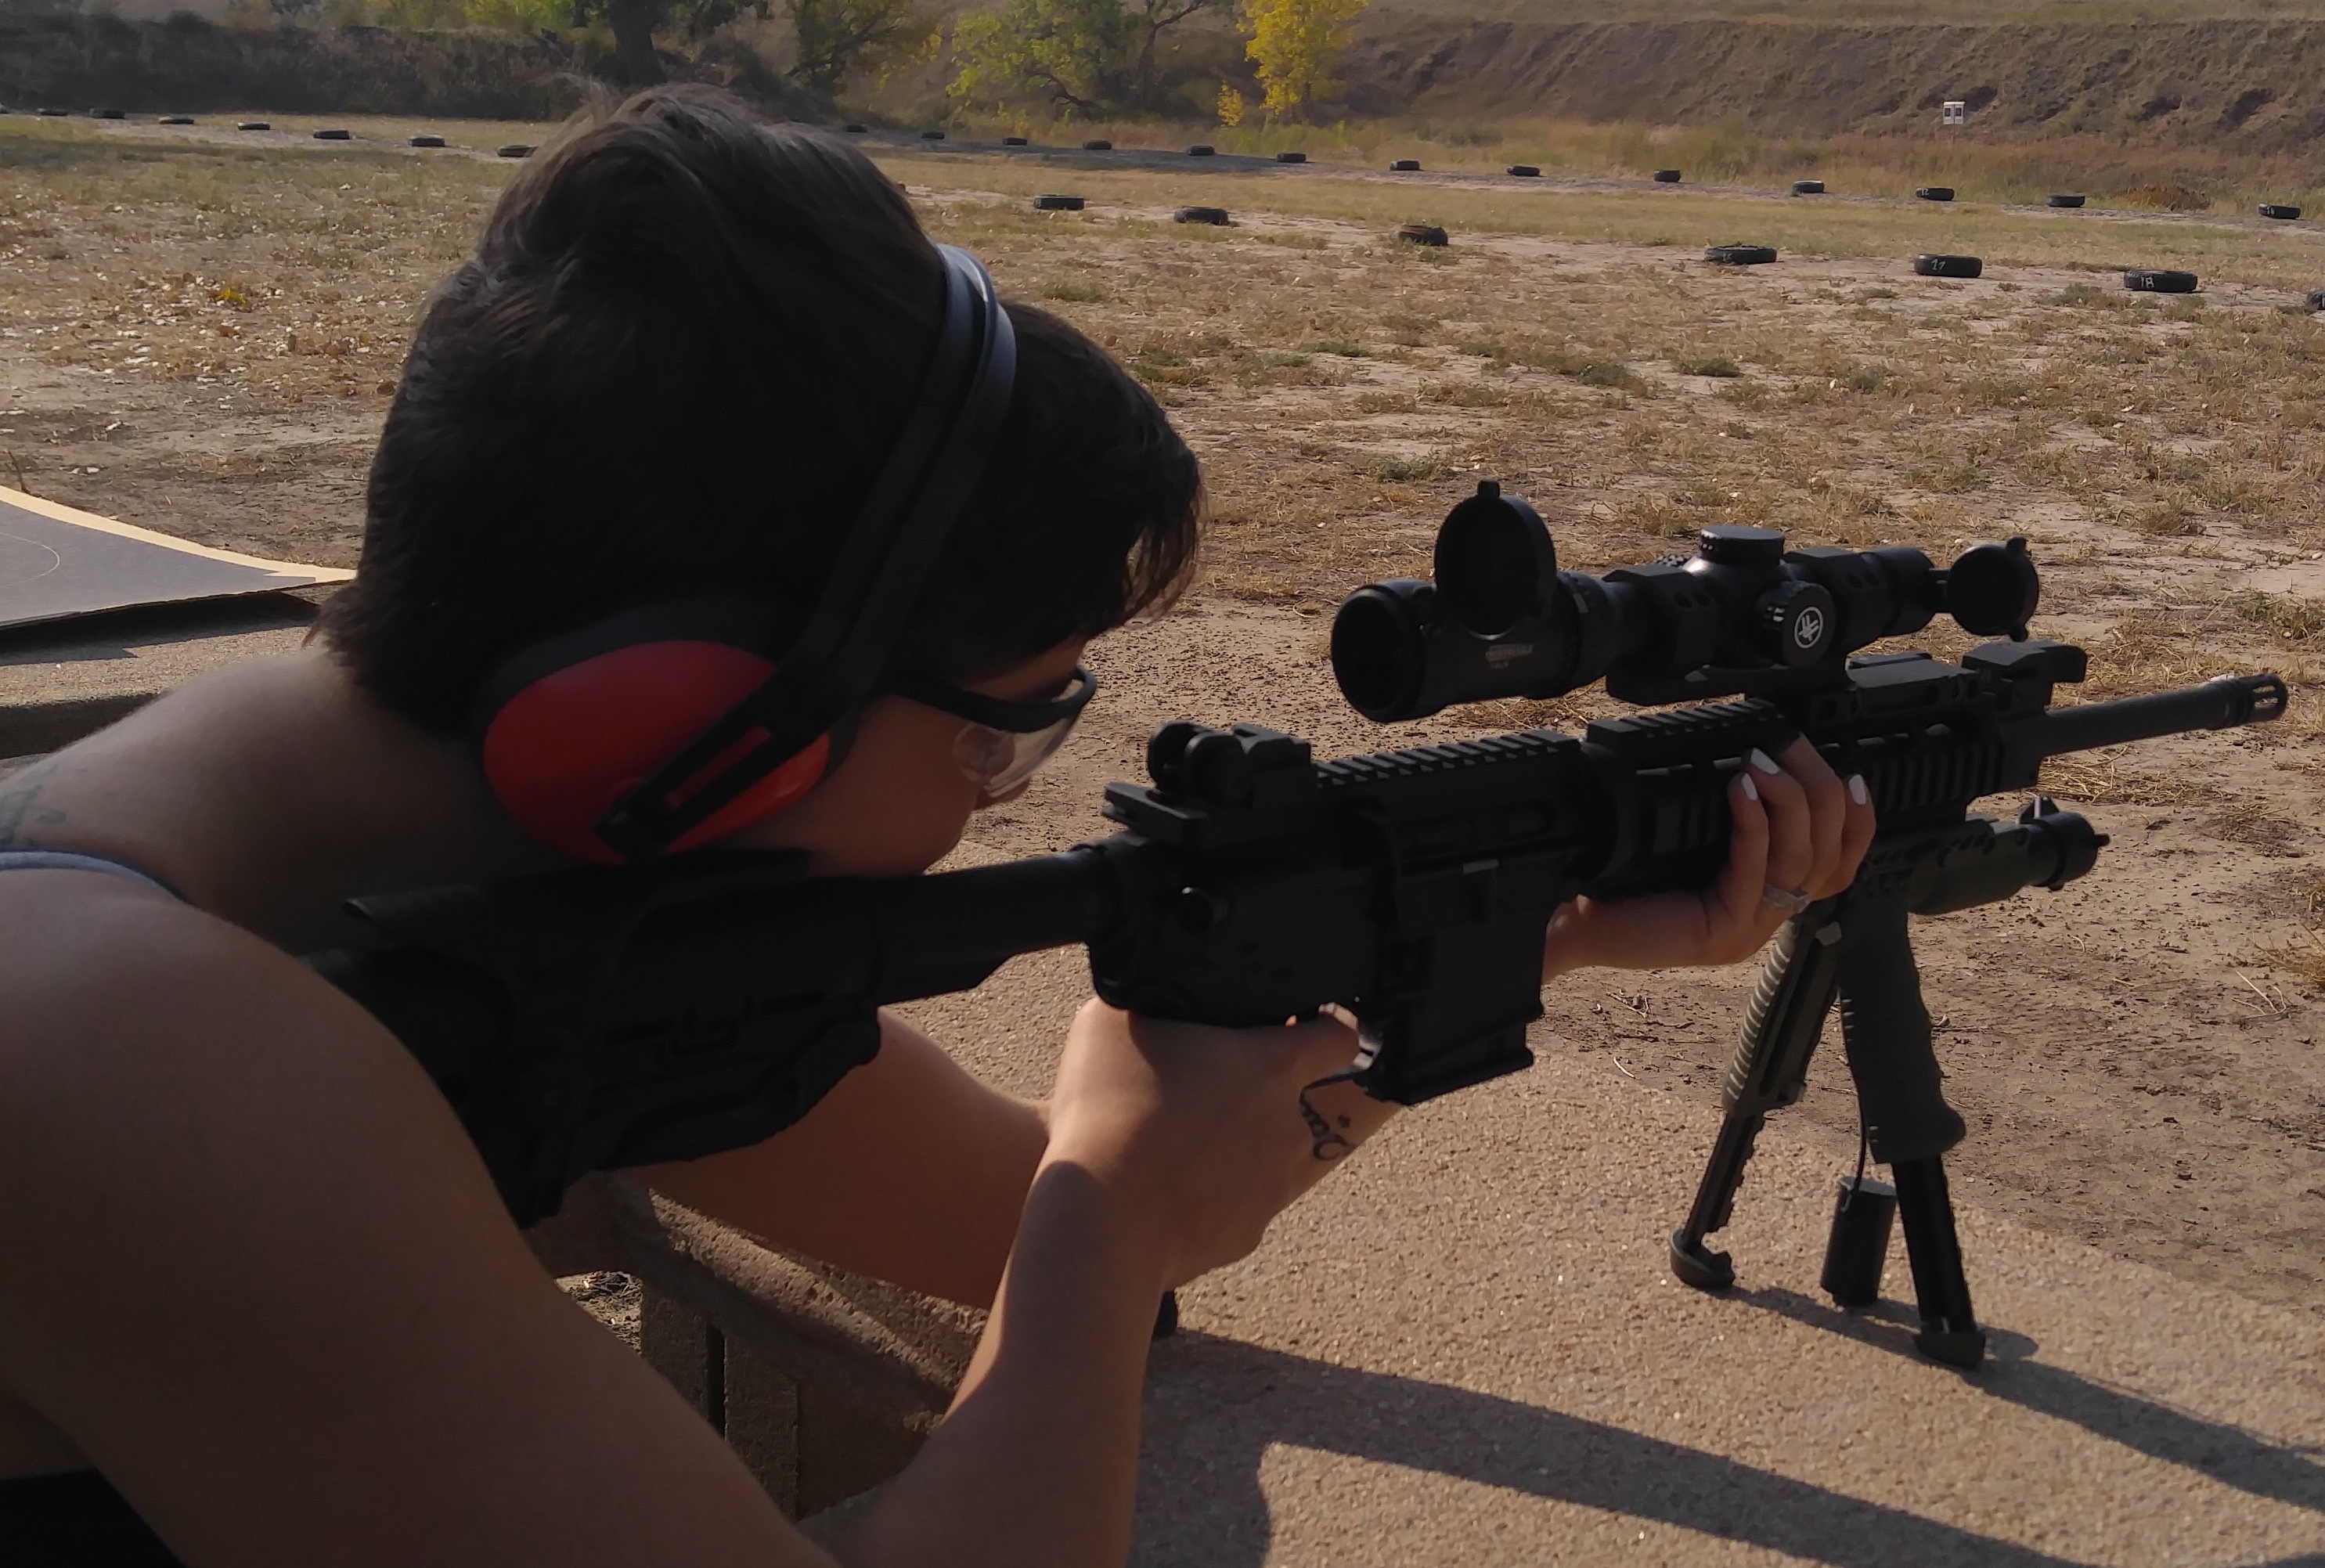 woman at firing range shooting